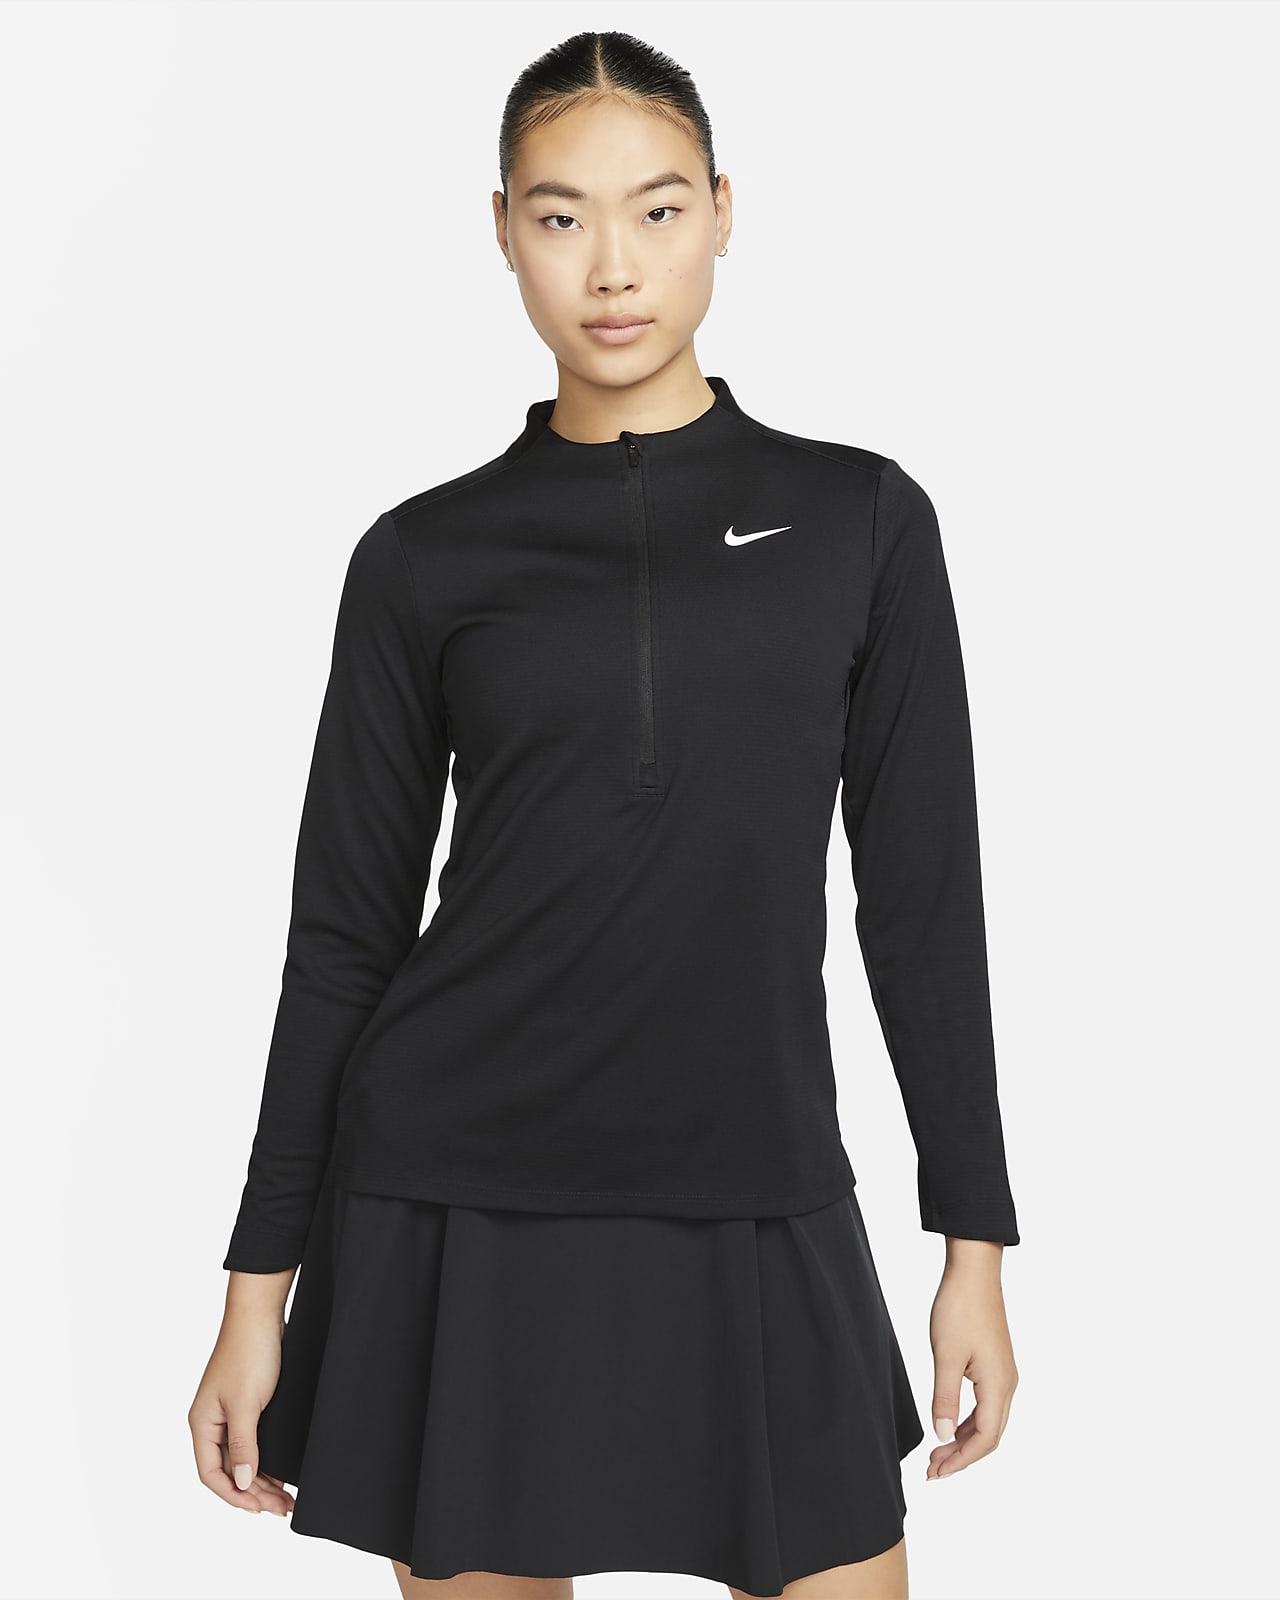 Nike Dri-FIT UV Advantage Women's 1/2-Zip Golf Top